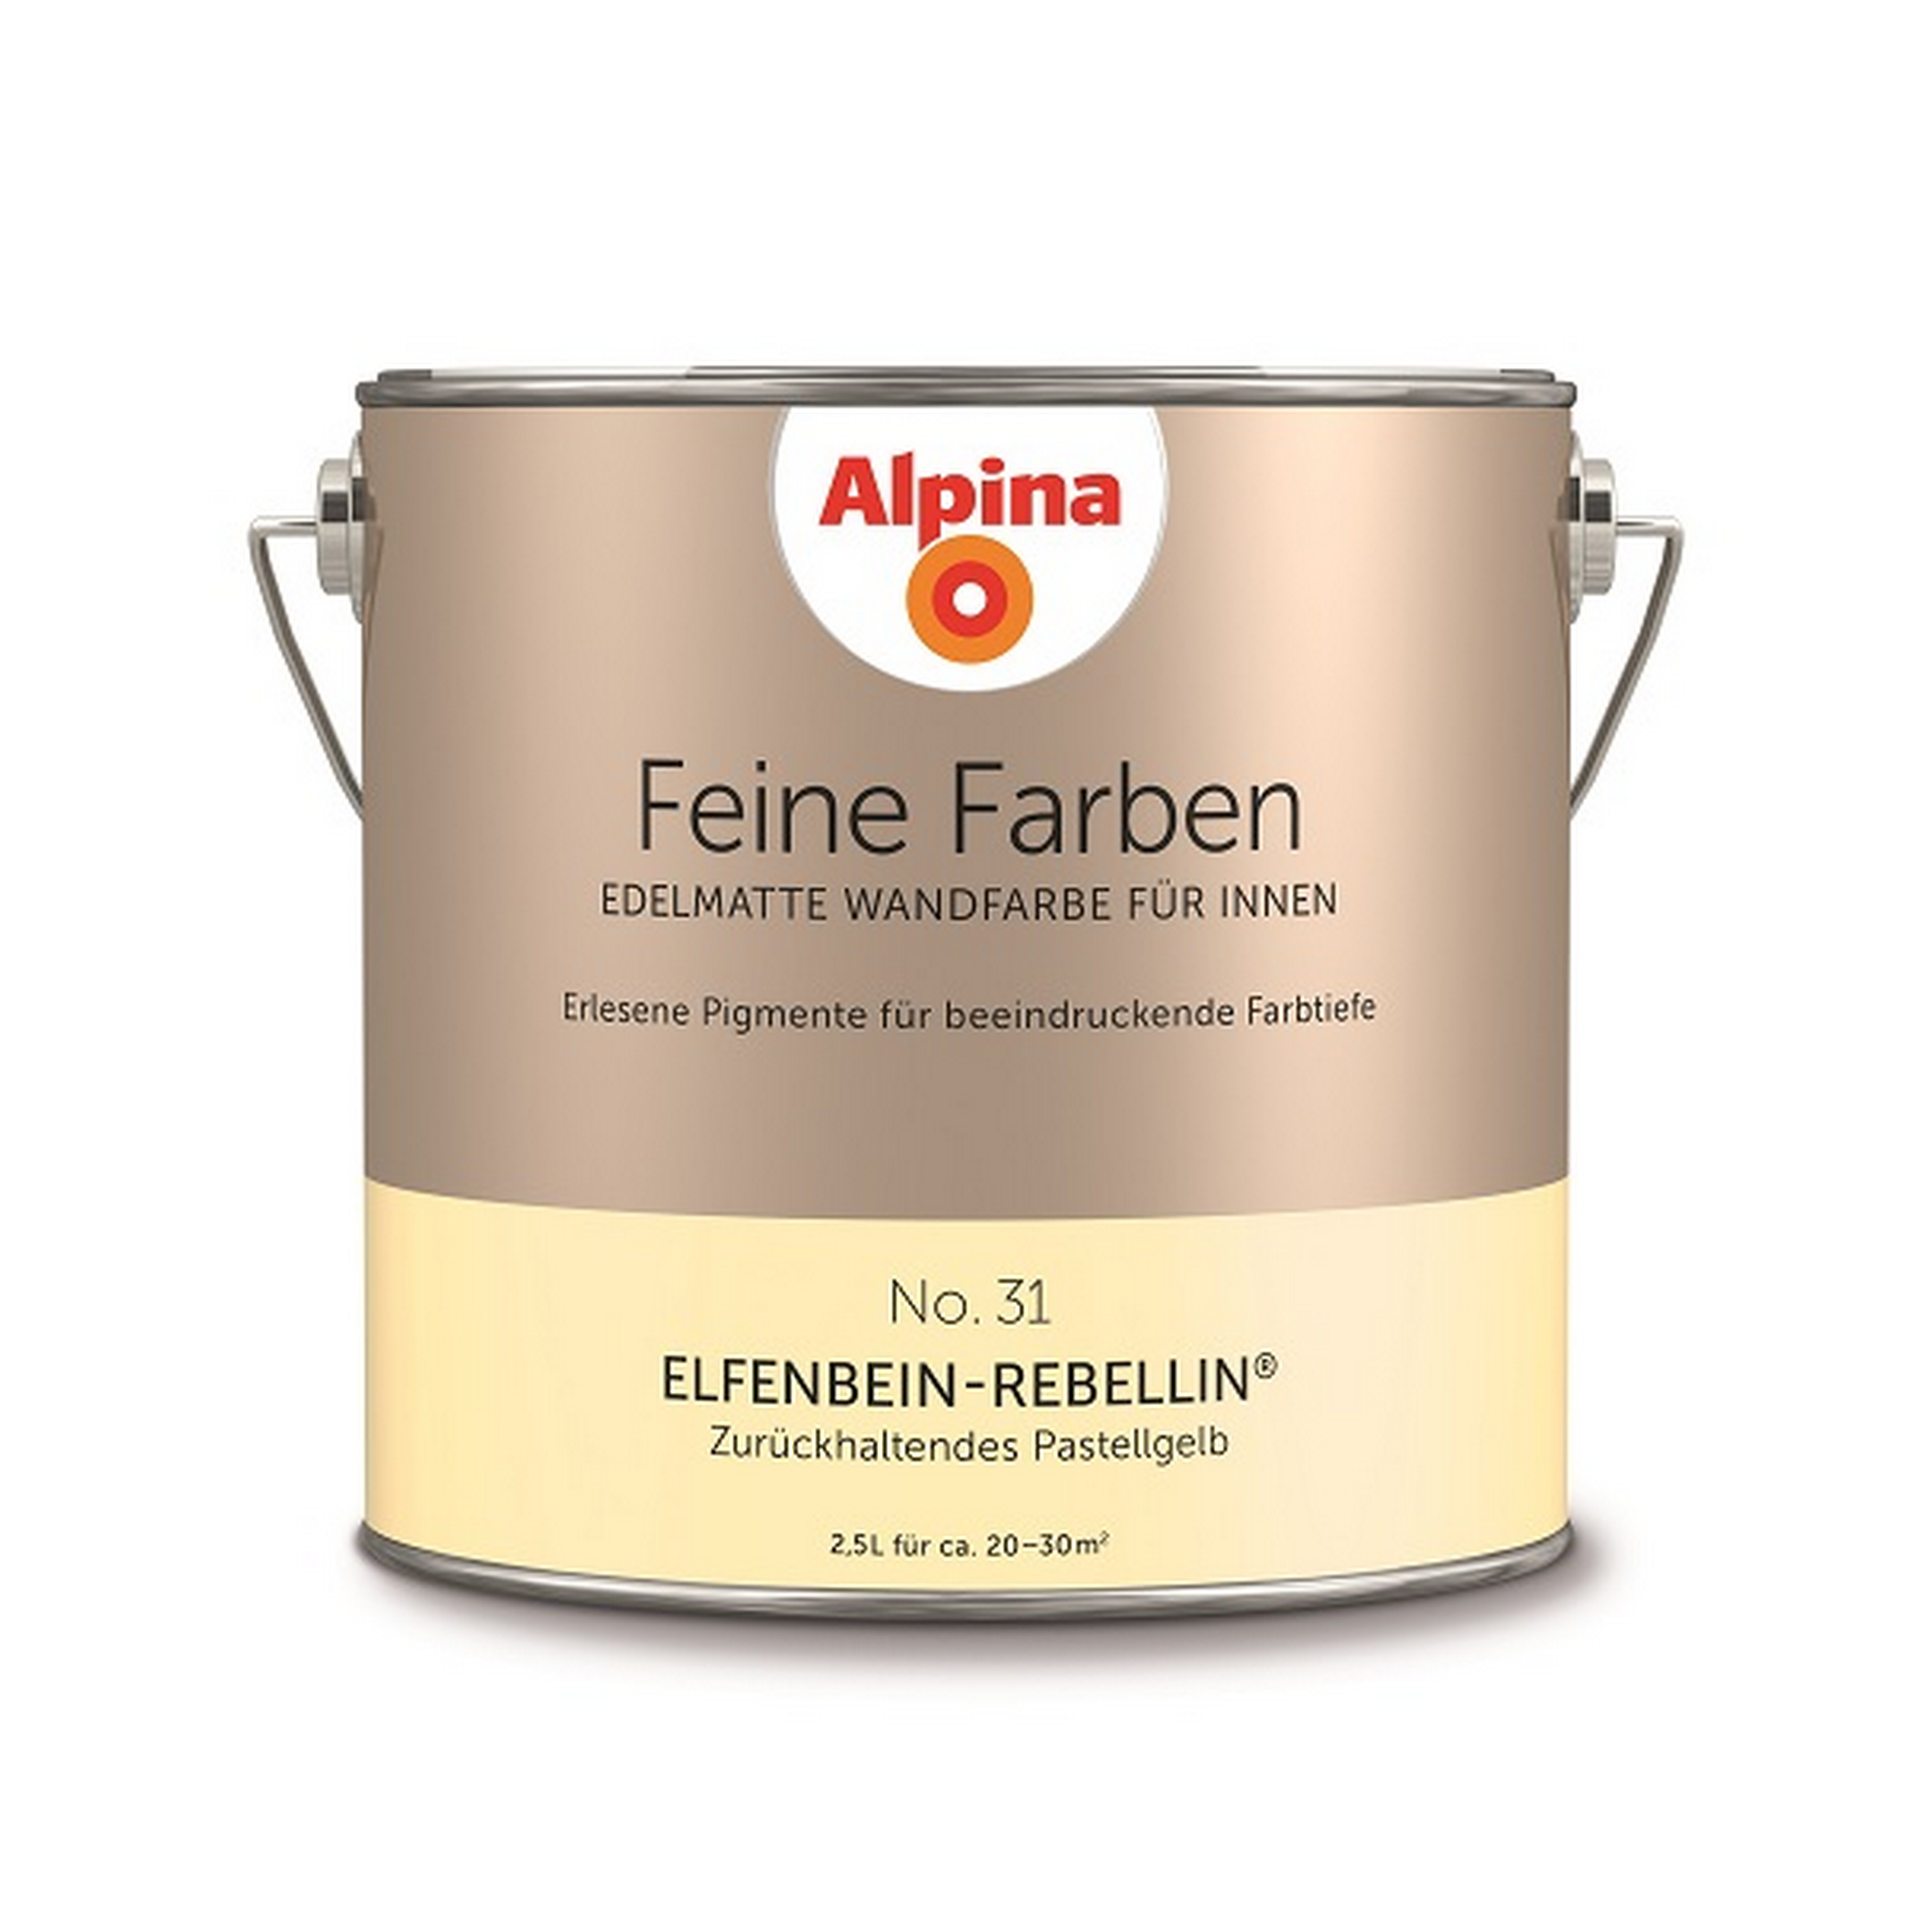 Feine Farben 'Elfenbein Rebellin' pastellgelb matt 2,5 l + product picture